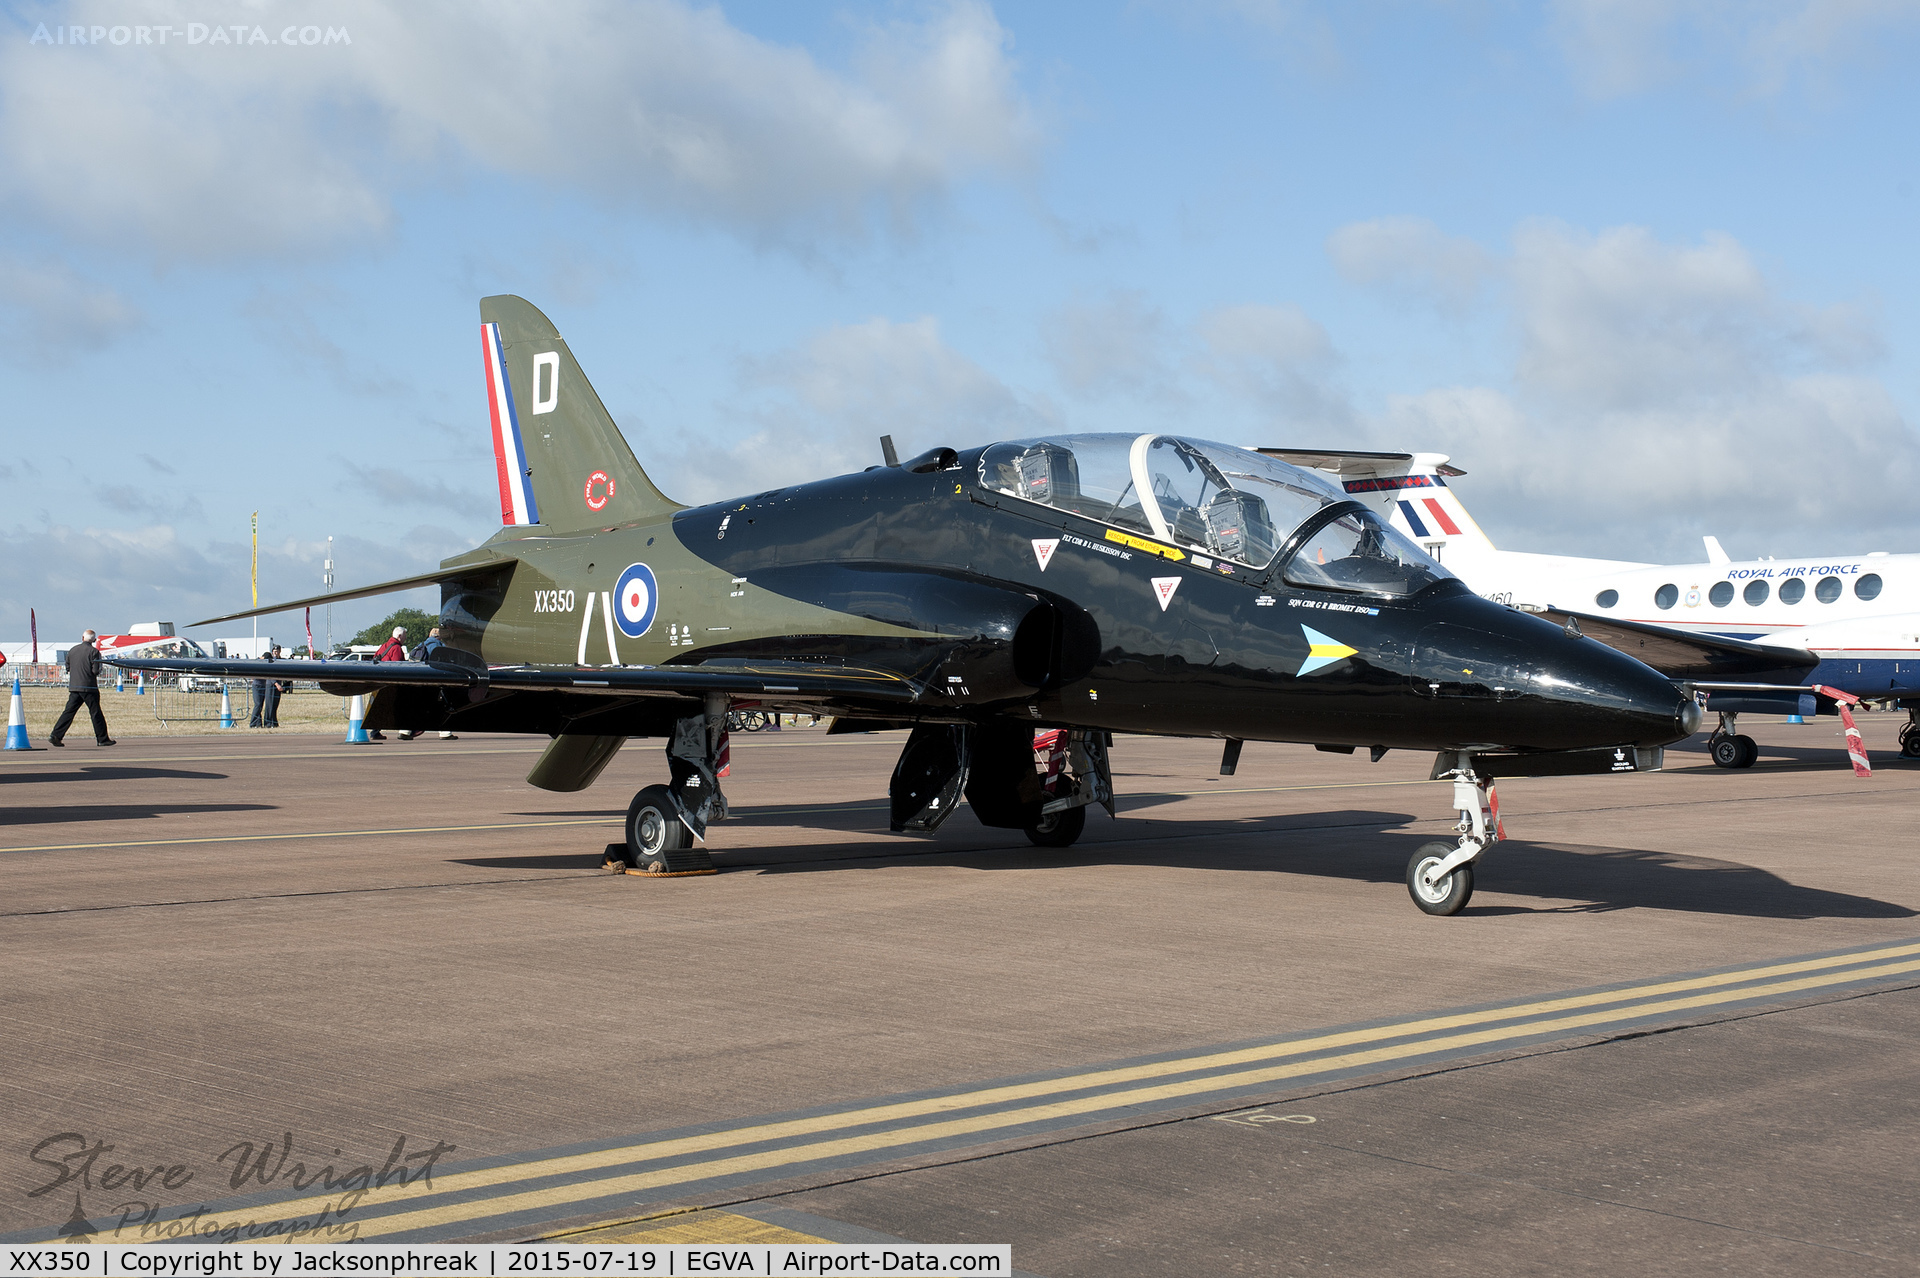 XX350, 1981 Hawker Siddeley Hawk T.1A C/N 199/312174, Royal International Air Tattoo 2015, RAF Fairford UK